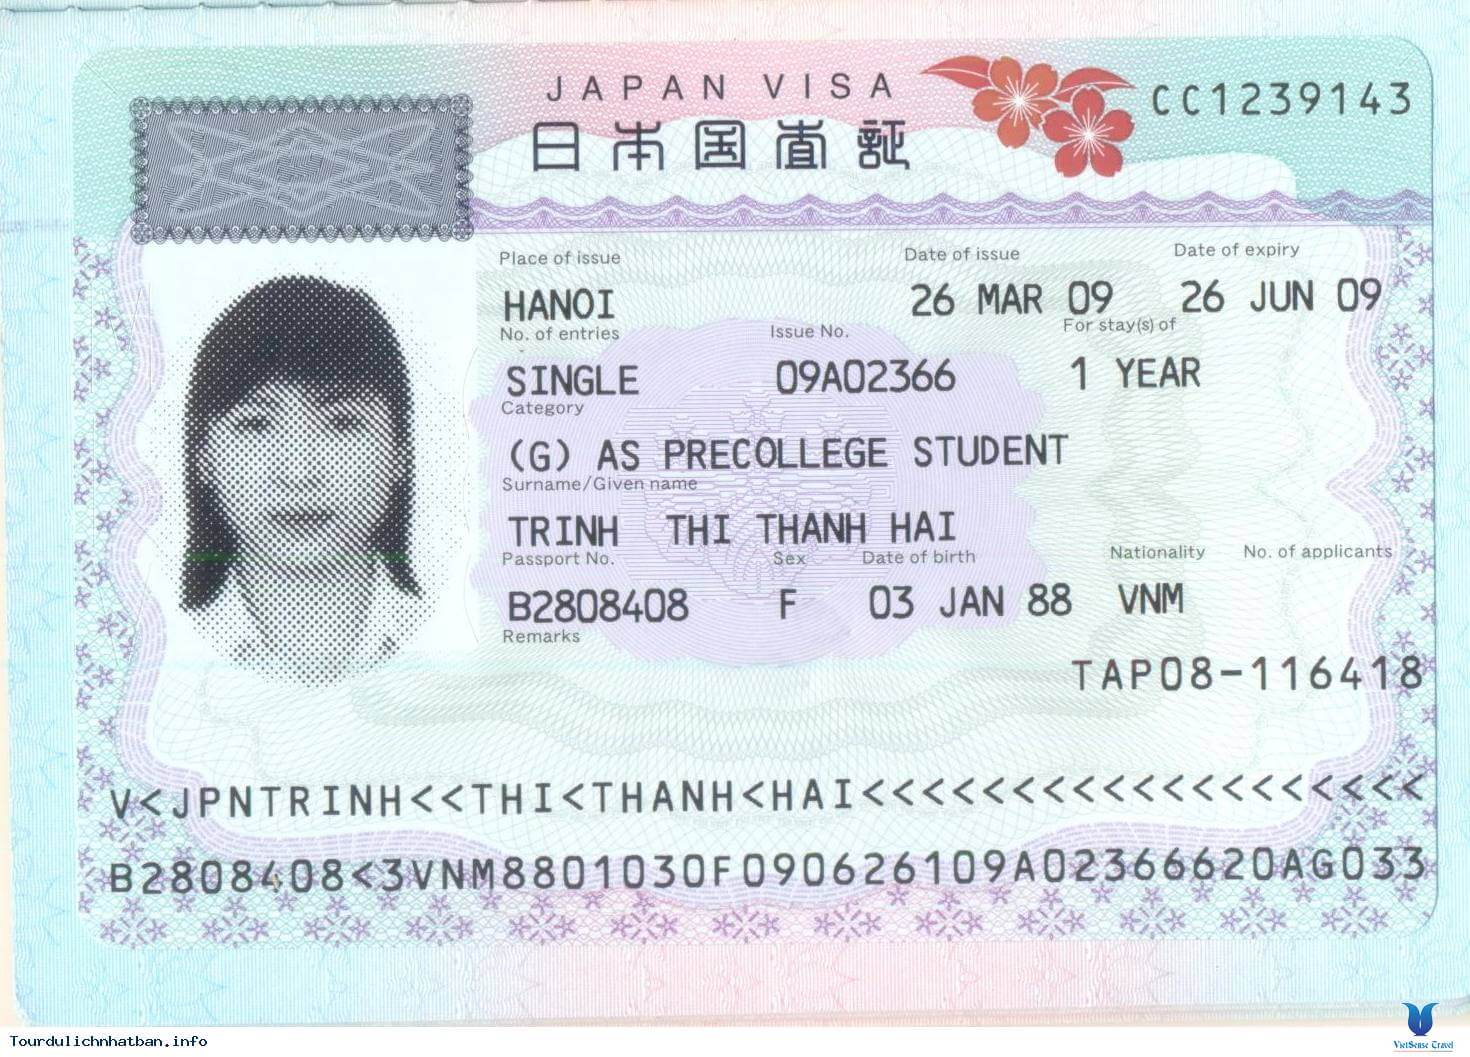 Thủ tục dành cho xin visa du học Nhật Bản bạn cần chuẩn bị